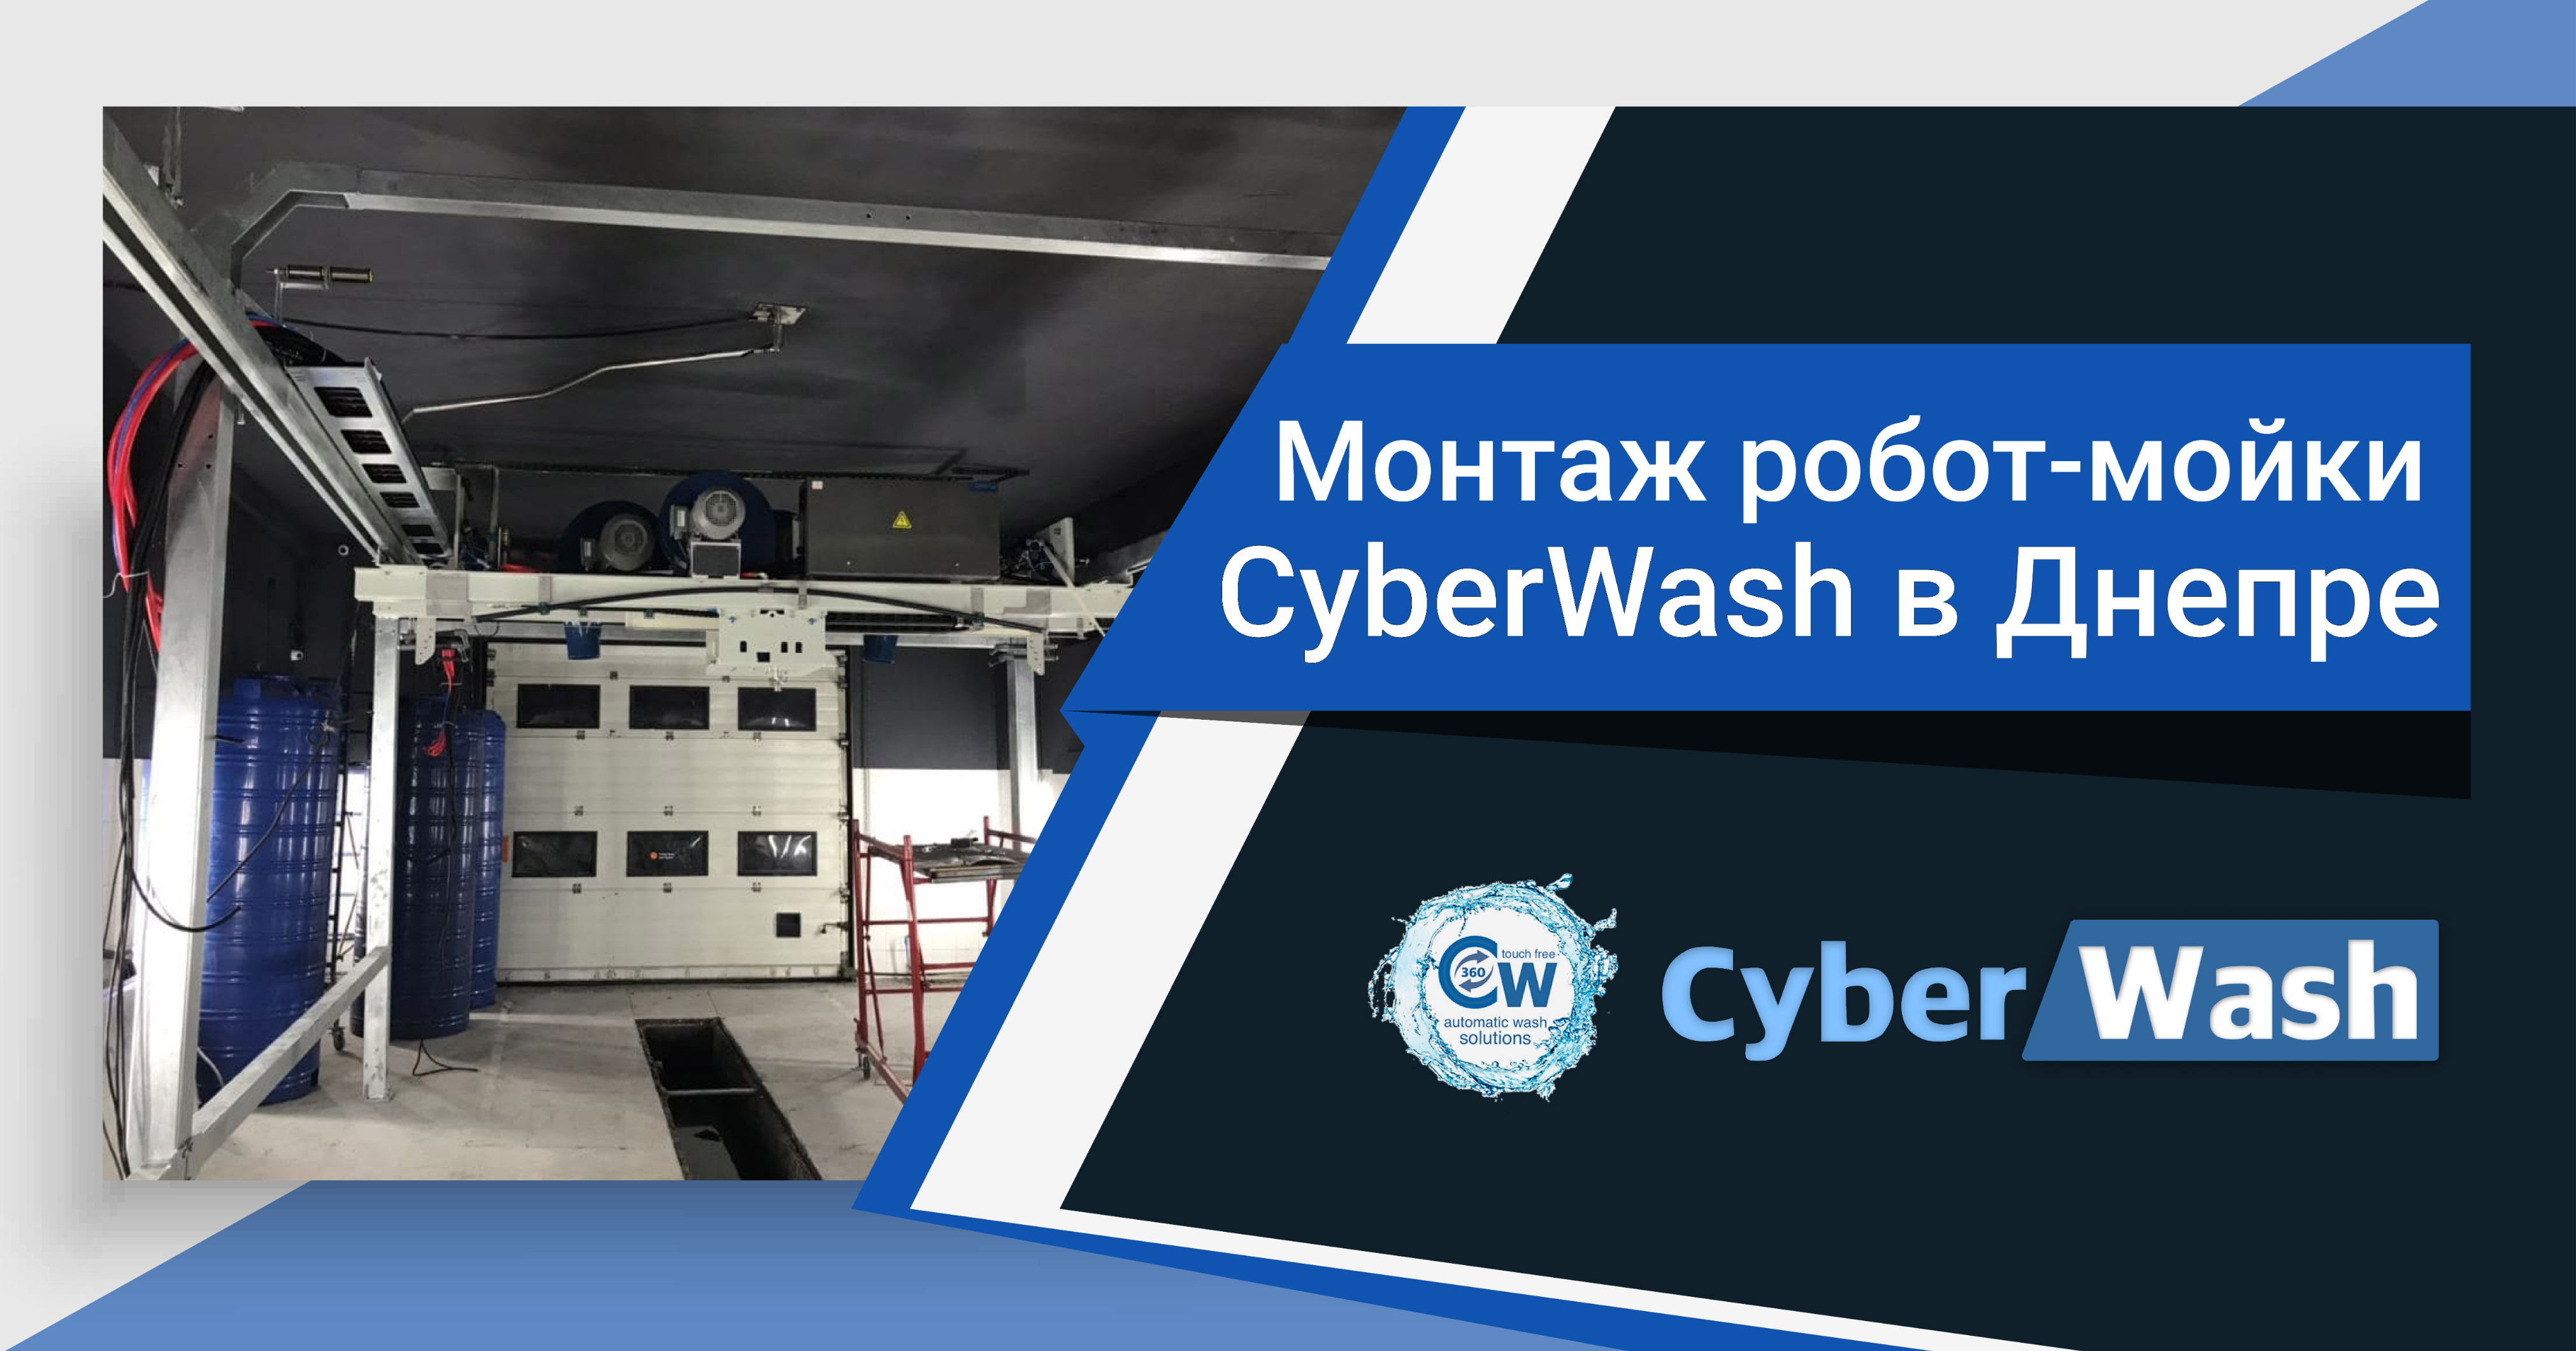 Фотоотчет с новой роботизированной мойки CyberWash в Днепре